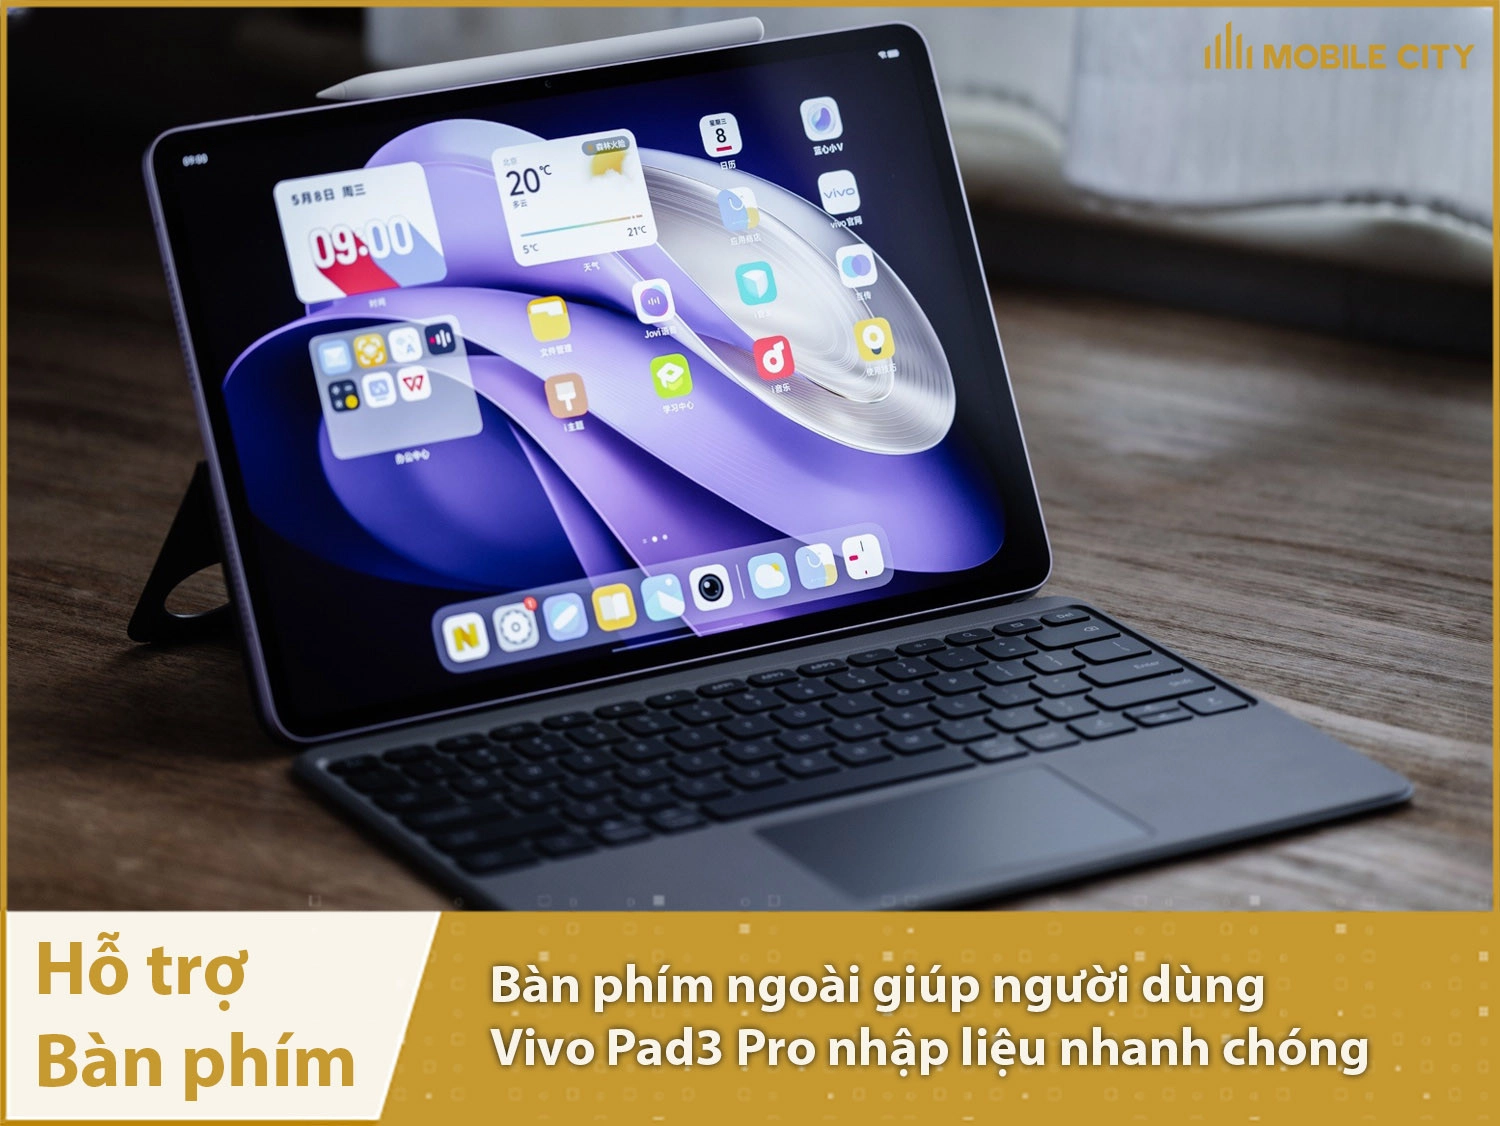 Vivo Pad3 Pro hỗ trợ bàn phím ngoài